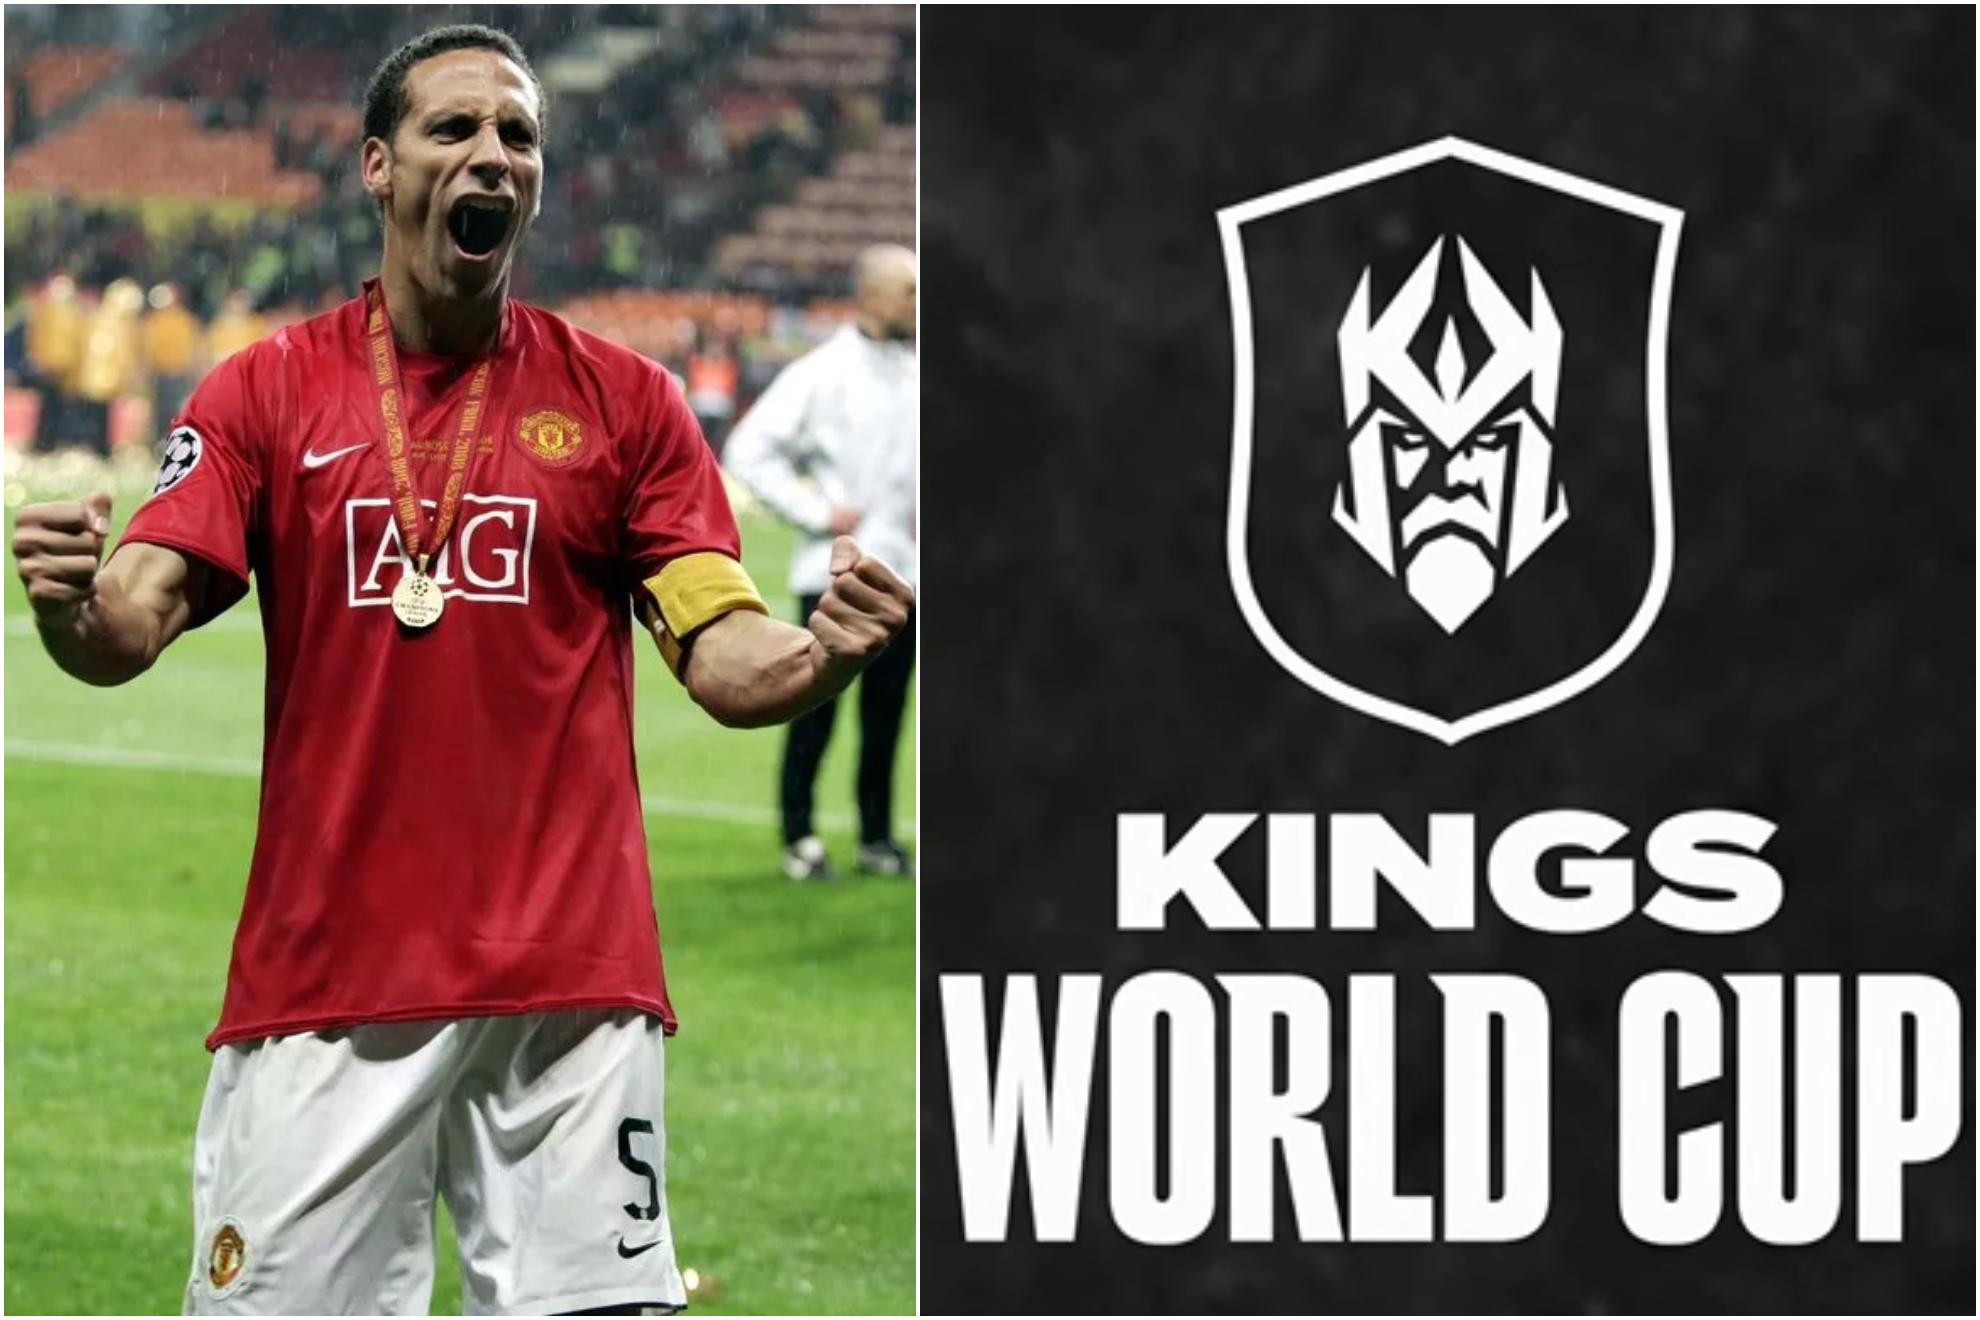 Rio Ferdinand ser� copresidente de un equipo en la Kings World Cup